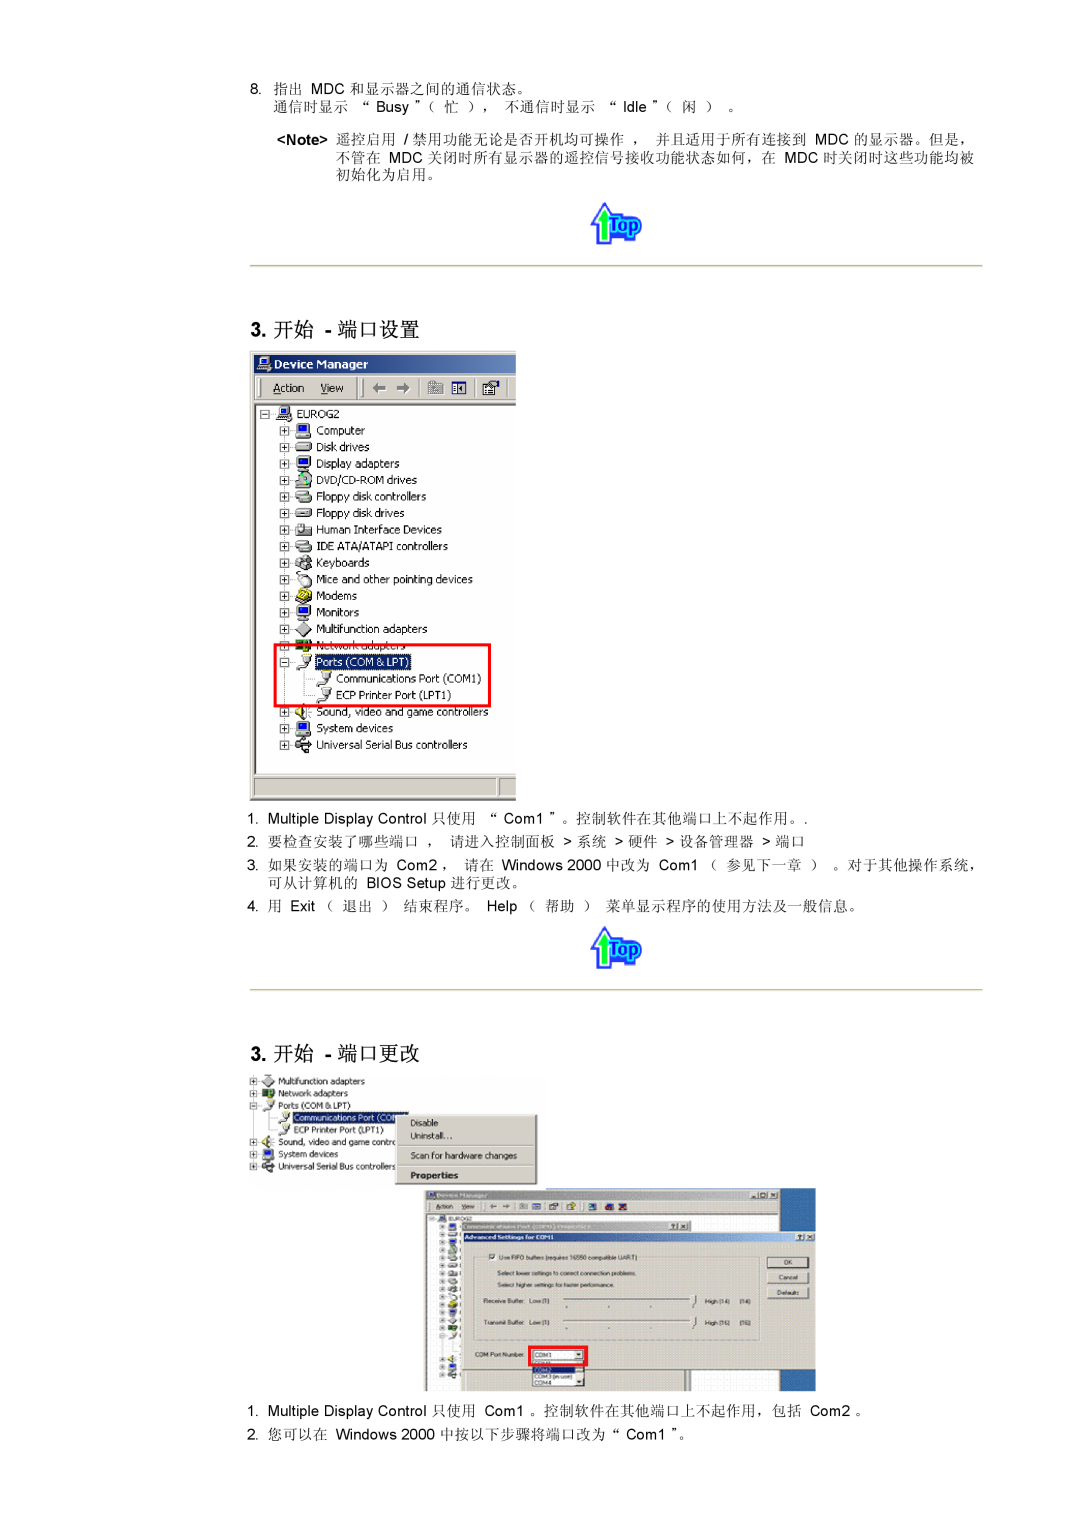 Samsung CK40PSNBG/EDC, CK40BSNS/EDC, CK40PSNS/EDC manual 3. 开始 - 端口设置, 3. 开始 - 端口更改 